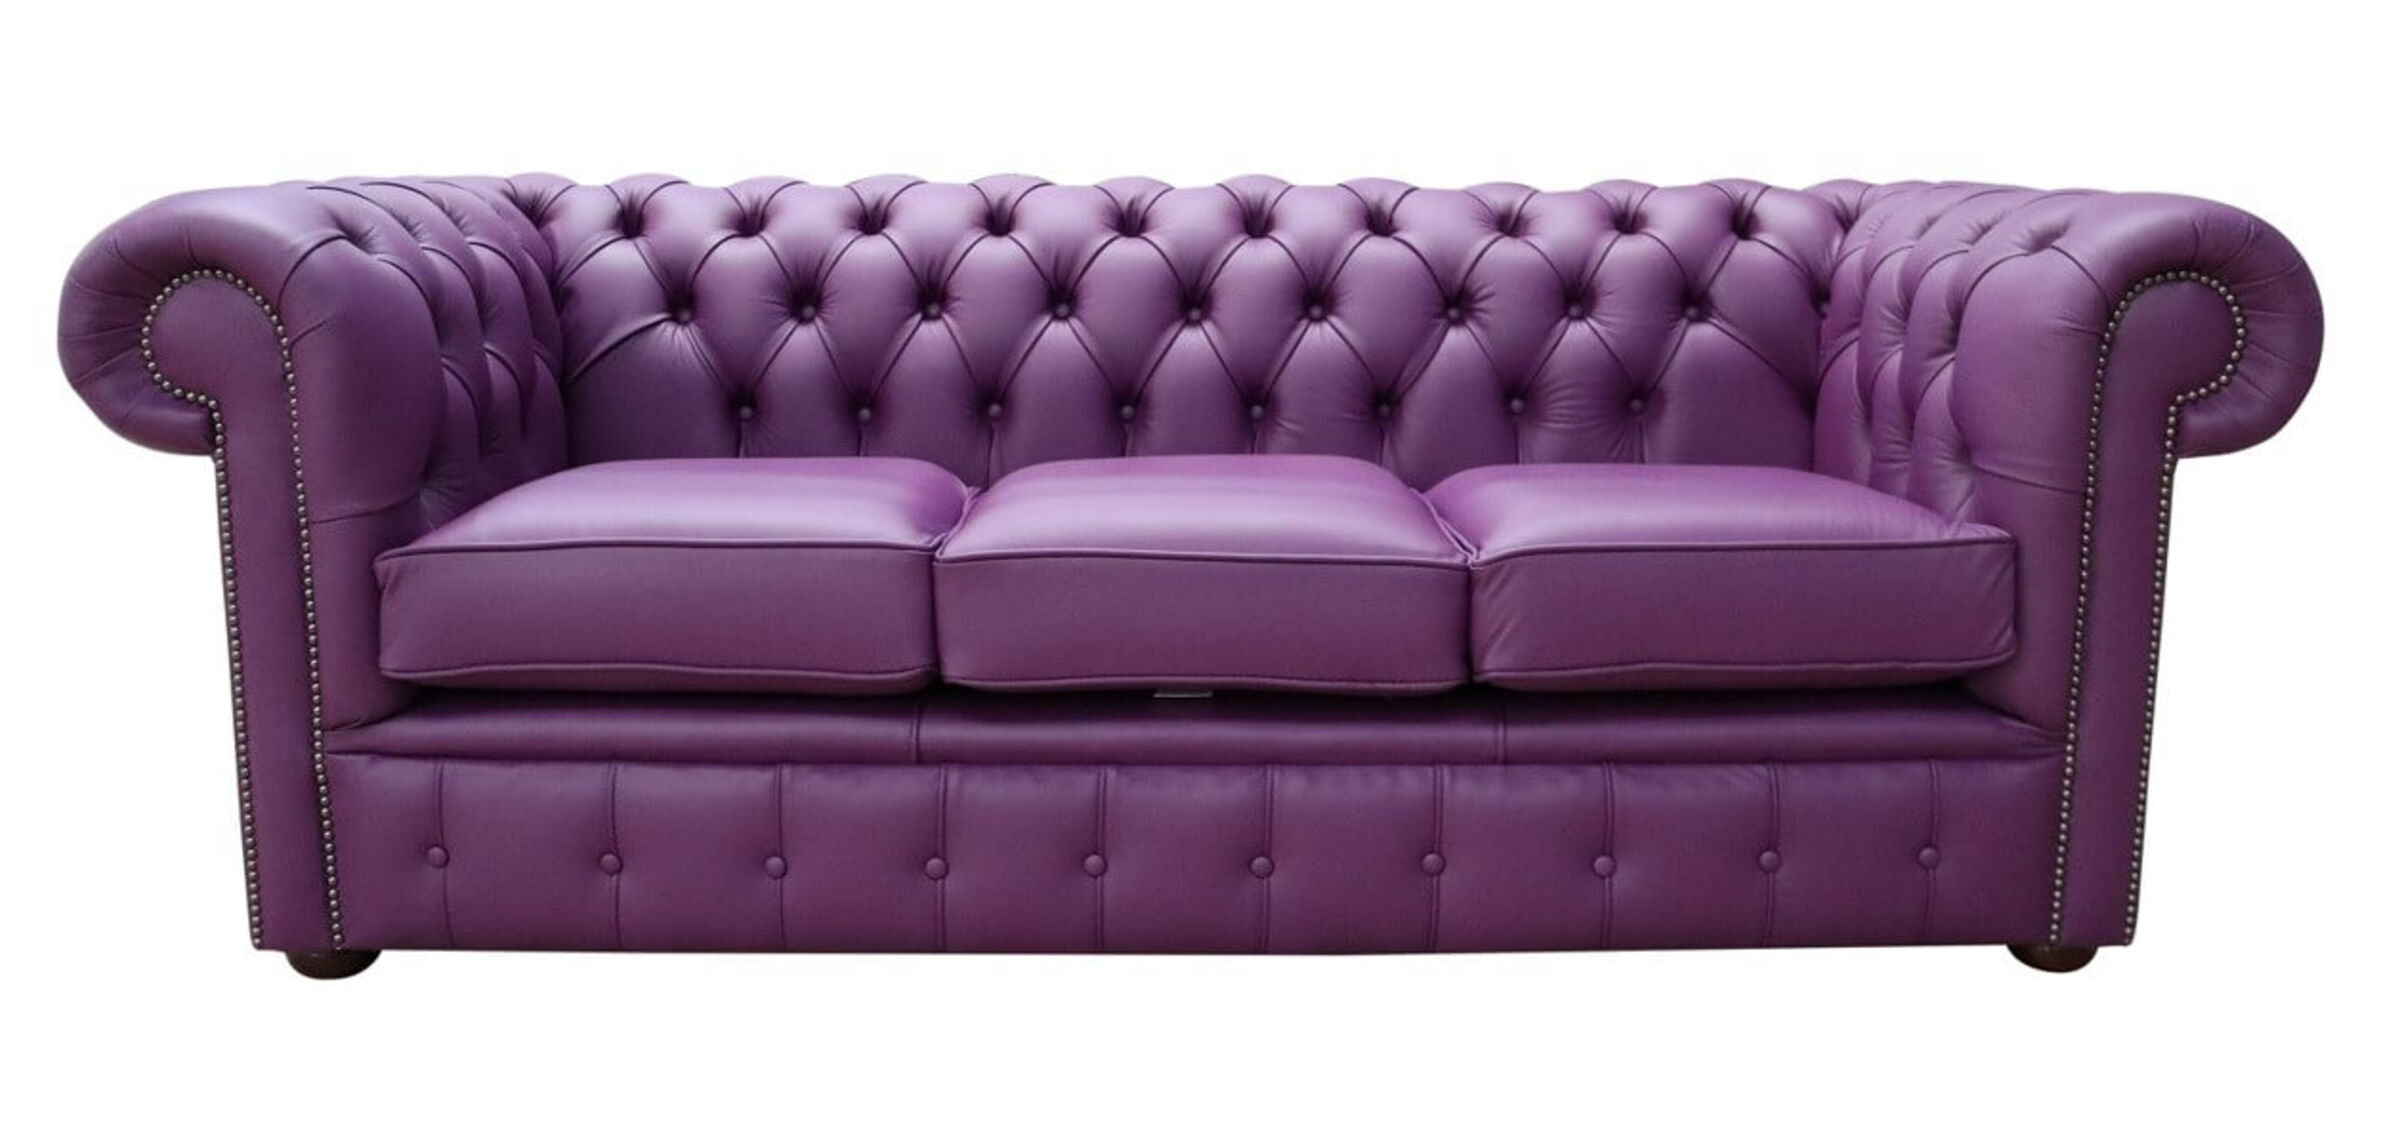 purple l shaped leather sofa